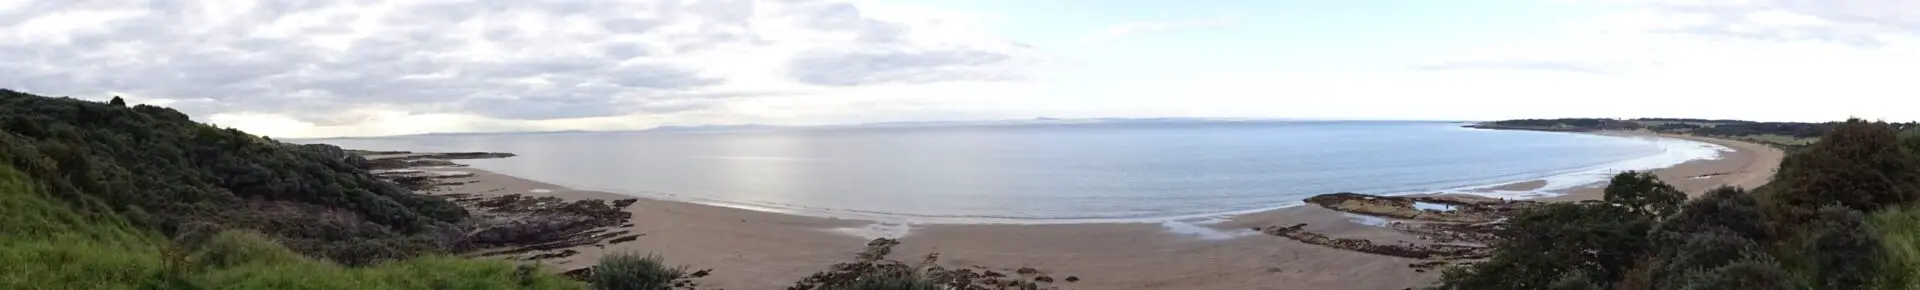 panorama of gullane beach scotland